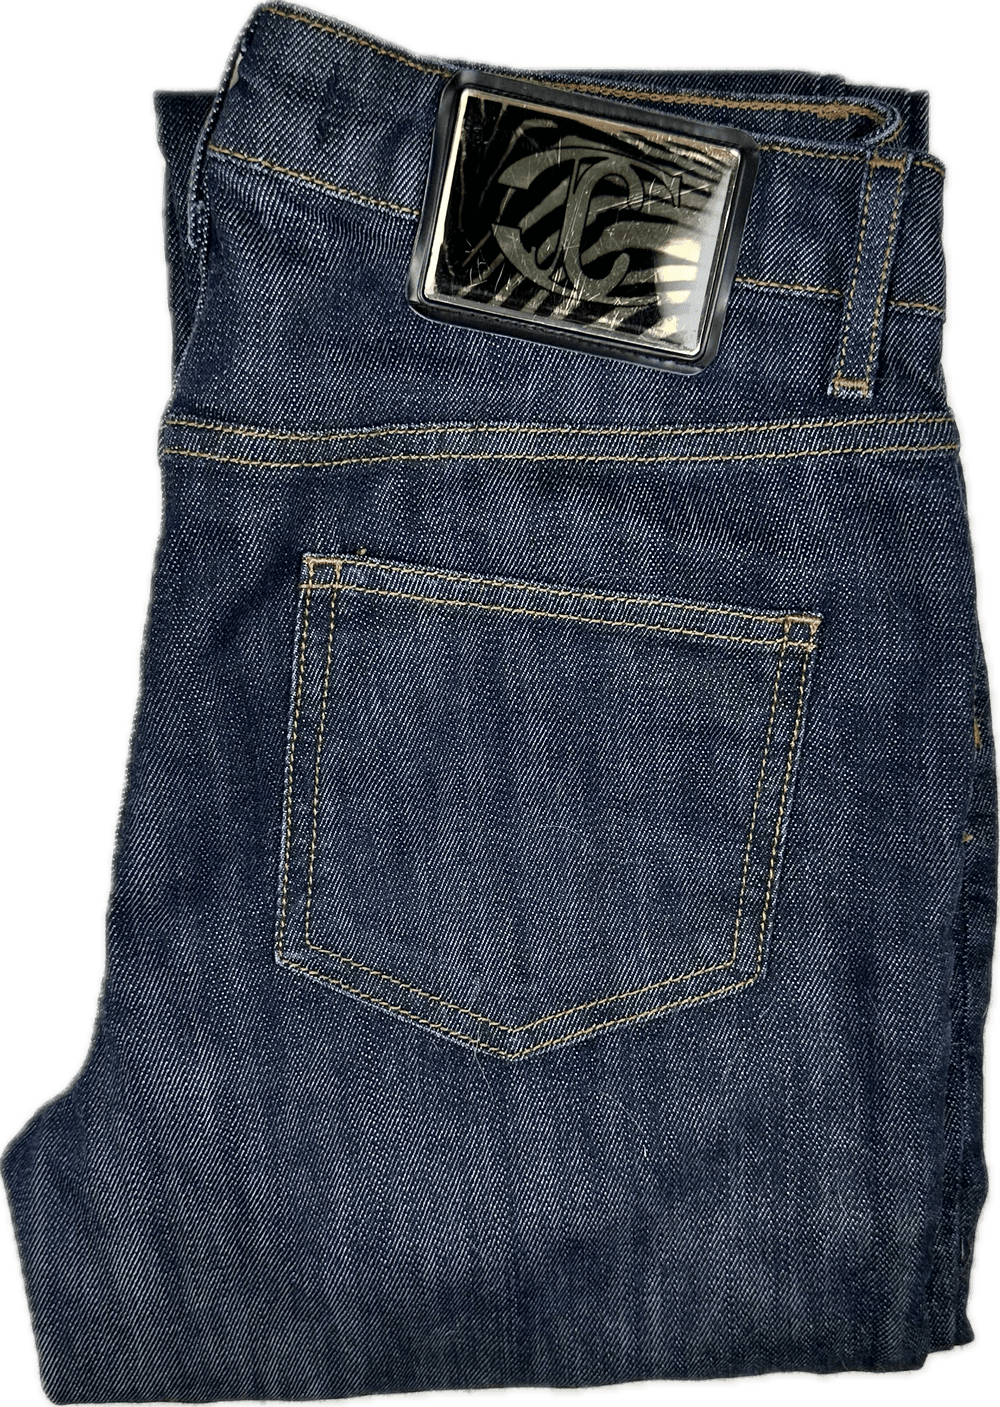 Just Cavalli Italian Ladies Distressed Slim Straight Jeans - Size 28 - Jean Pool